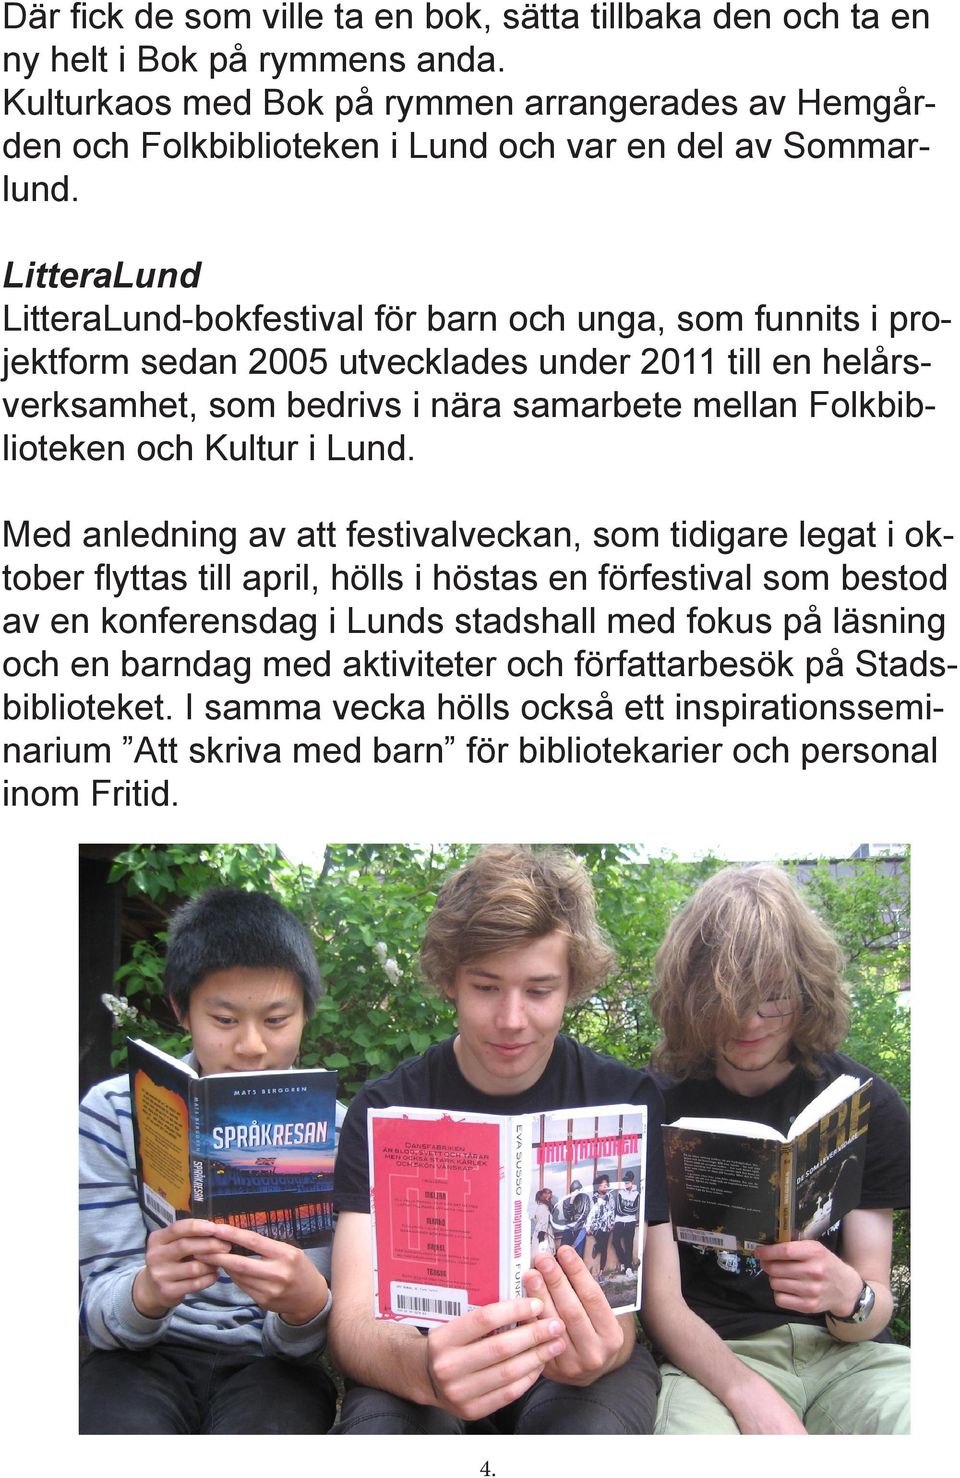 LitteraLund LitteraLund-bokfestival för barn och unga, som funnits i projektform sedan 2005 utvecklades under 2011 till en helårsverksamhet, som bedrivs i nära samarbete mellan Folkbiblioteken och